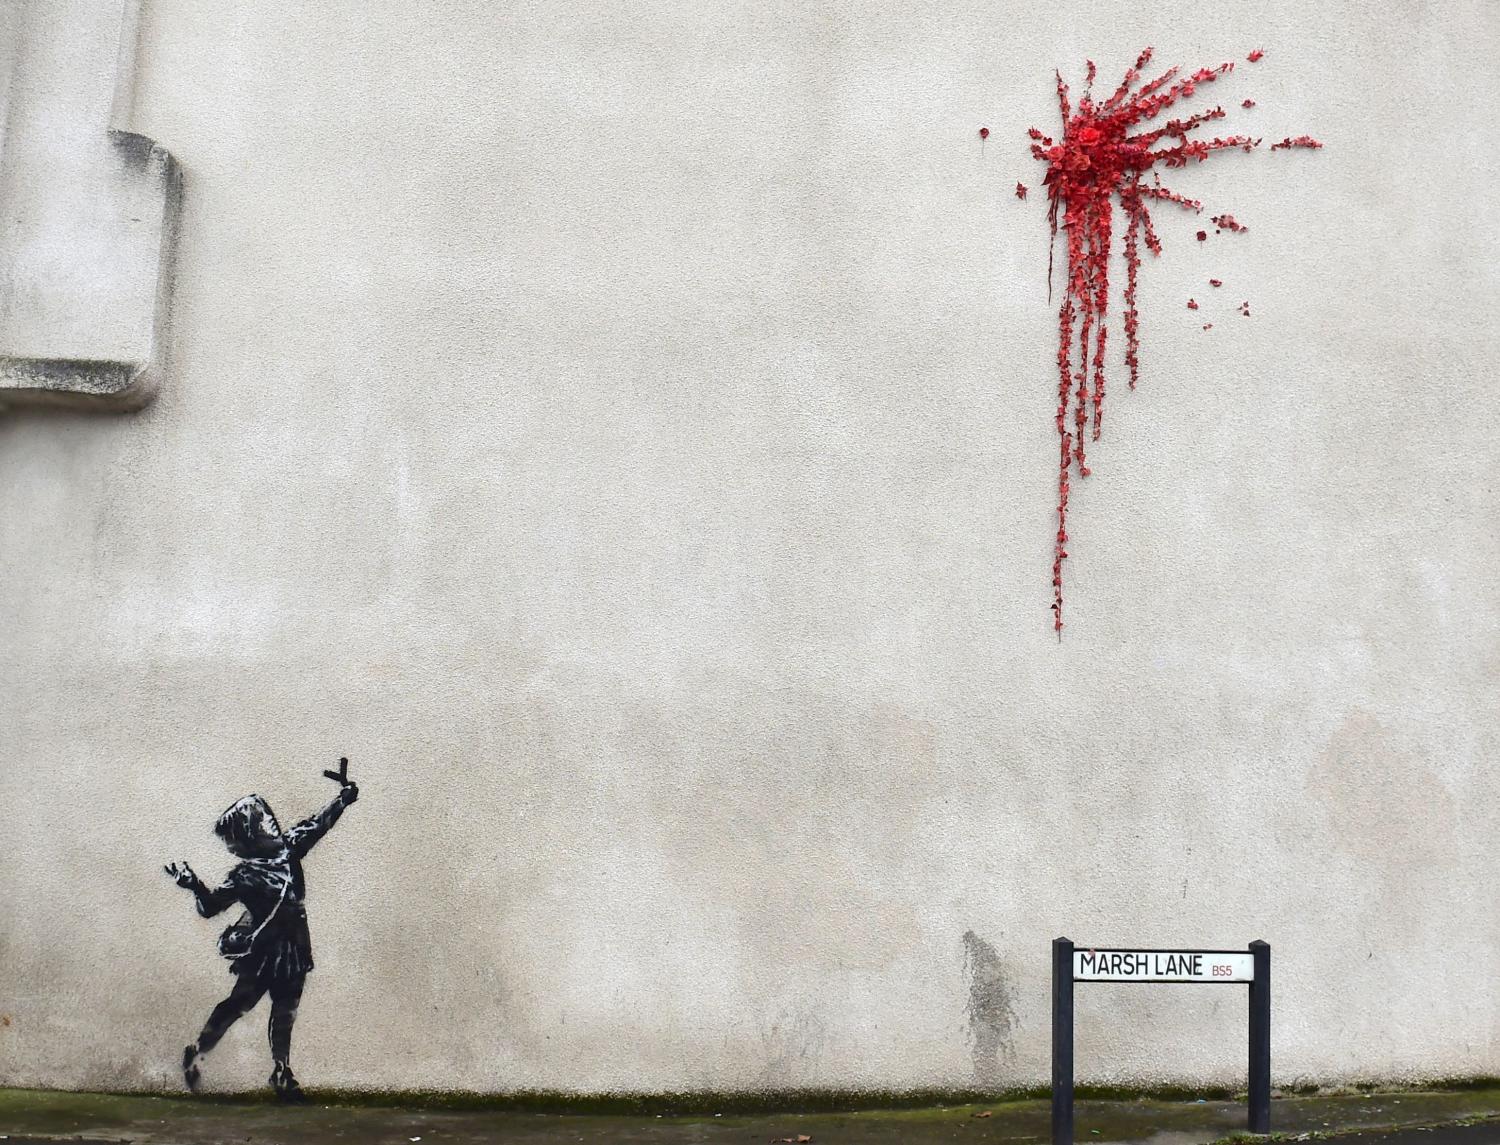 El supuesto nuevo mural de Banksy, en Marsh Lane, Bristol.